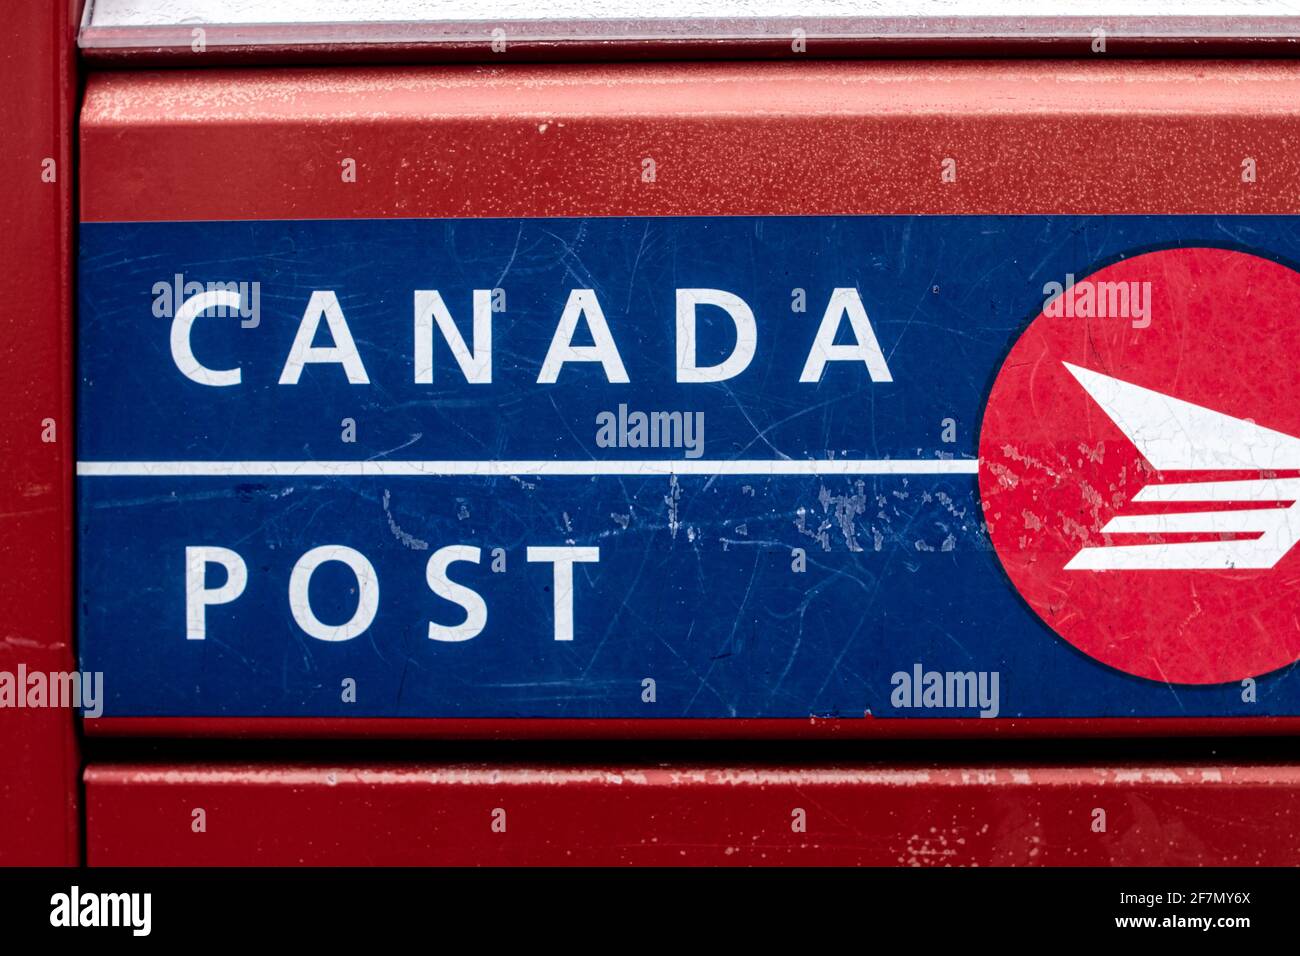 Londra, Ontario, Canada - Febbraio 15 2021: Rosso, blu e bianco Canada post-scatola di lettere in metallo, scatto fresco e primo piano del logo. Foto Stock